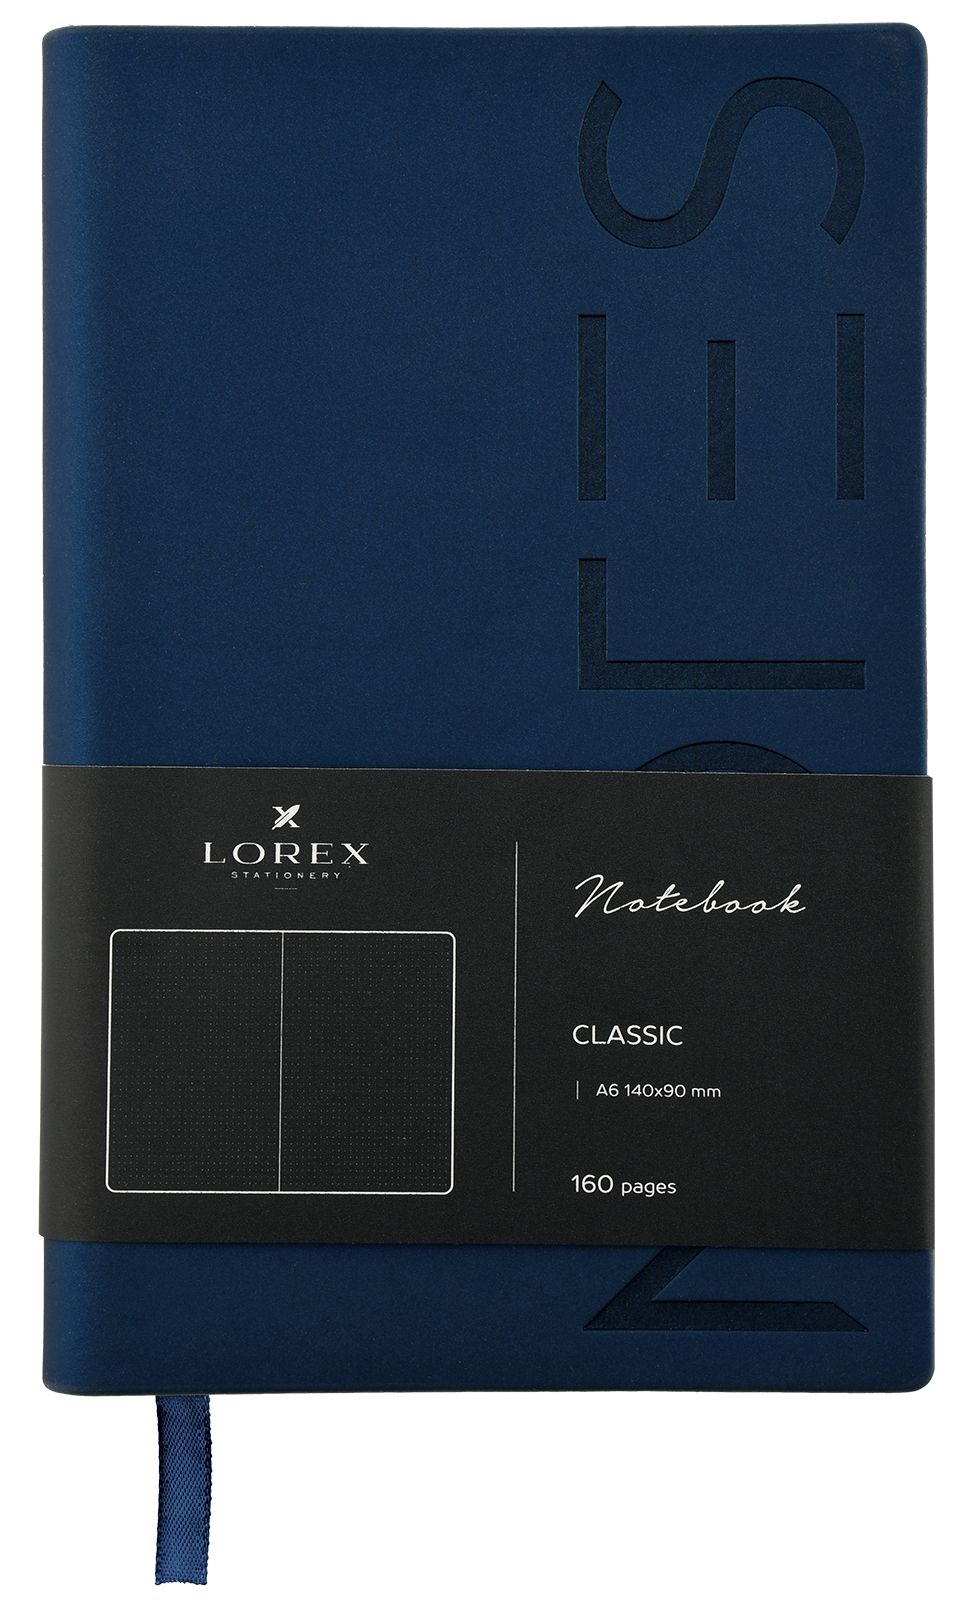 Записная книжка LOREX, A6, 160 стр. в точку, мягкая обложка. Синий. Серия CLASSIC оптом